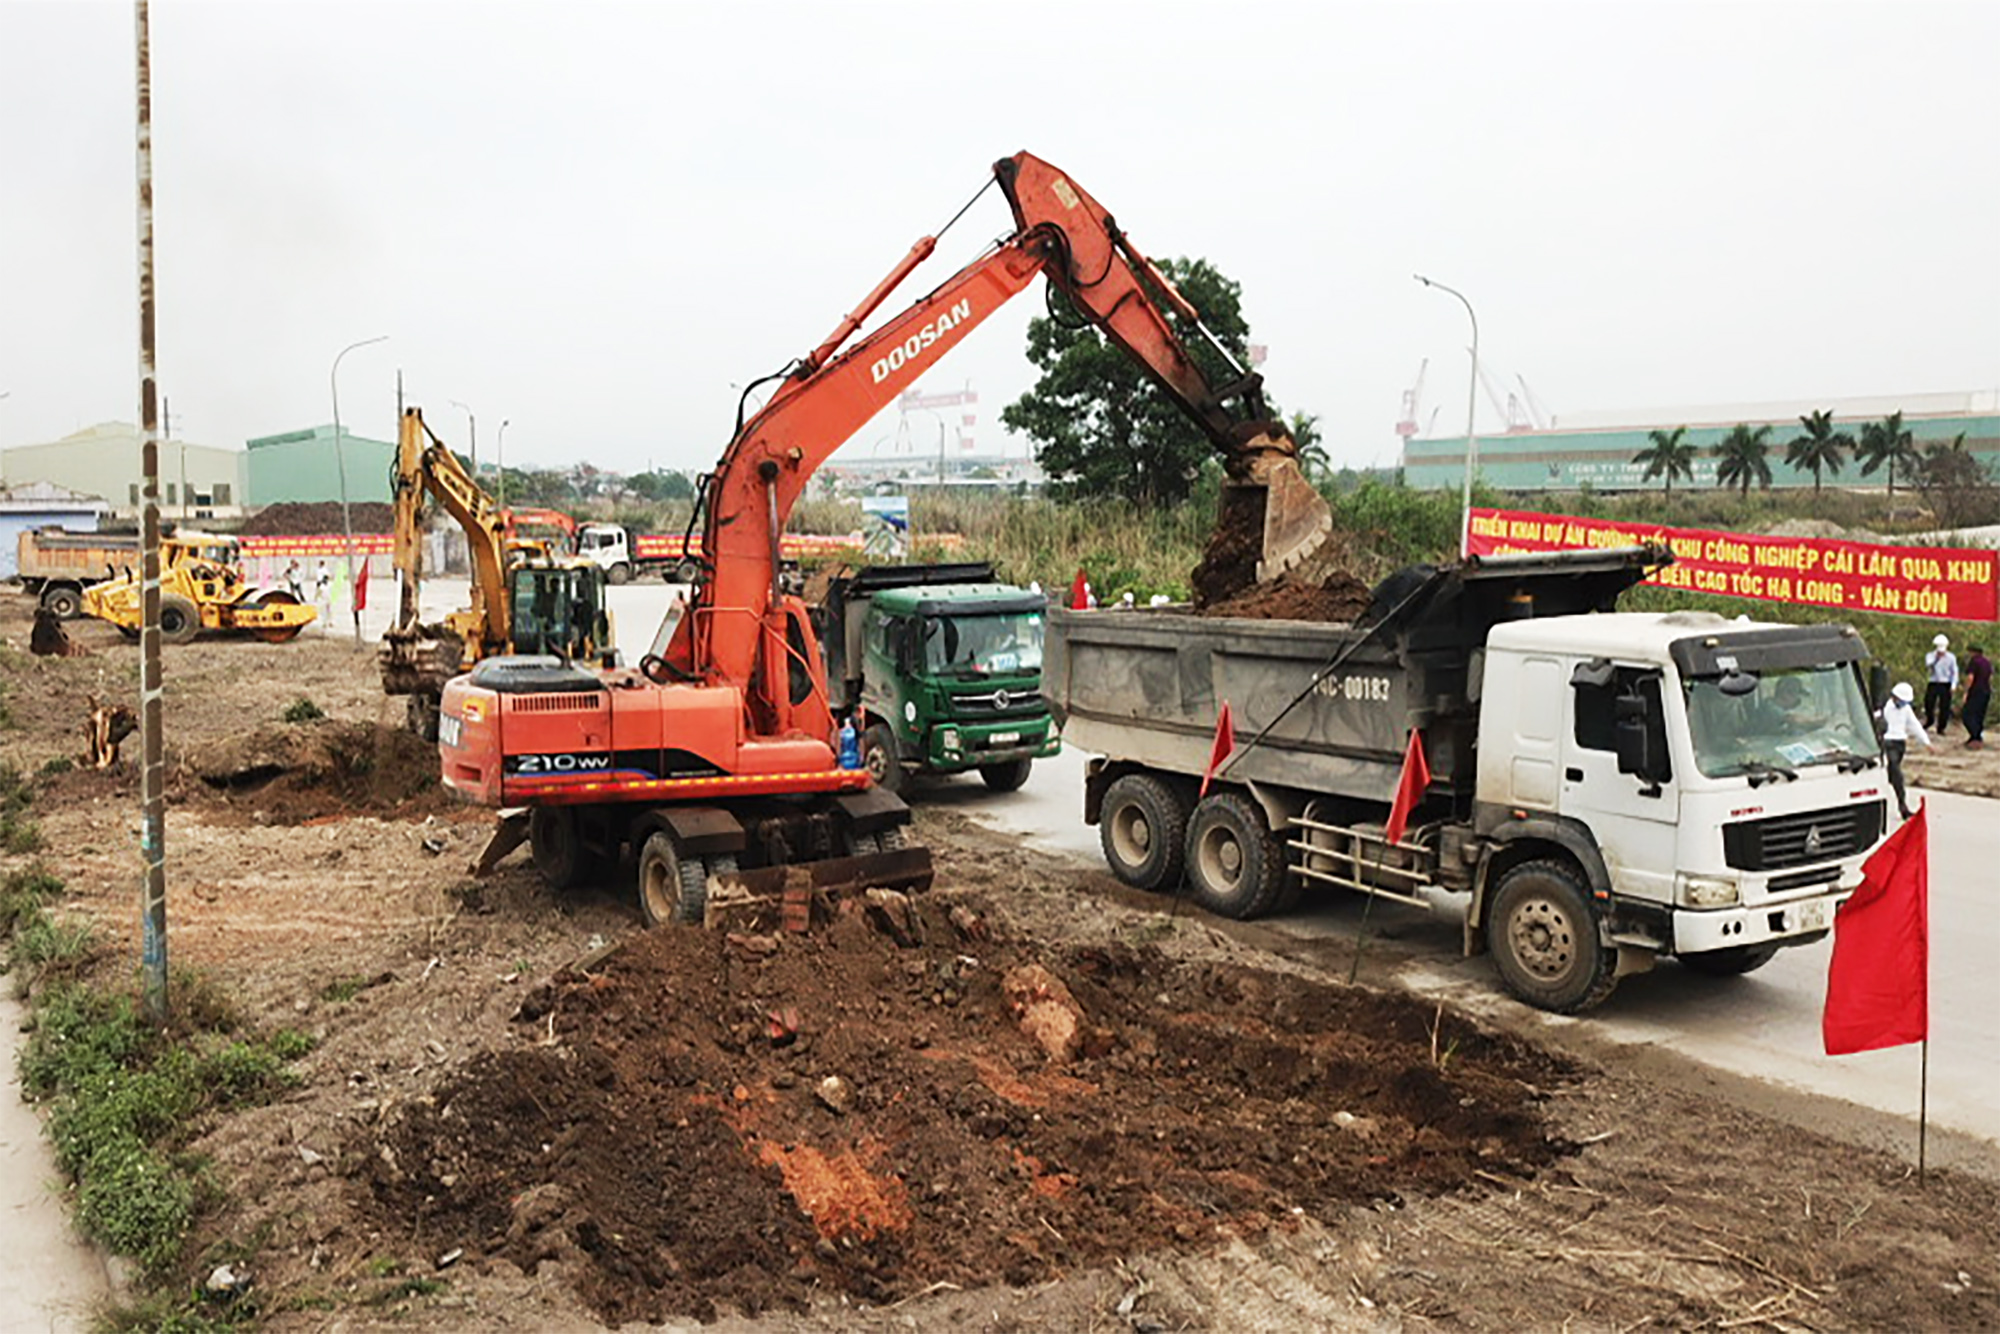 Nhà thầu tổ chức bóc dỡ thực bì và thi công nền đường - thuộc dự án đường nối Khu công nghiệp Cái Lân qua KCN Việt Hưng đến cao tốc Hạ Long – Vân Đồn